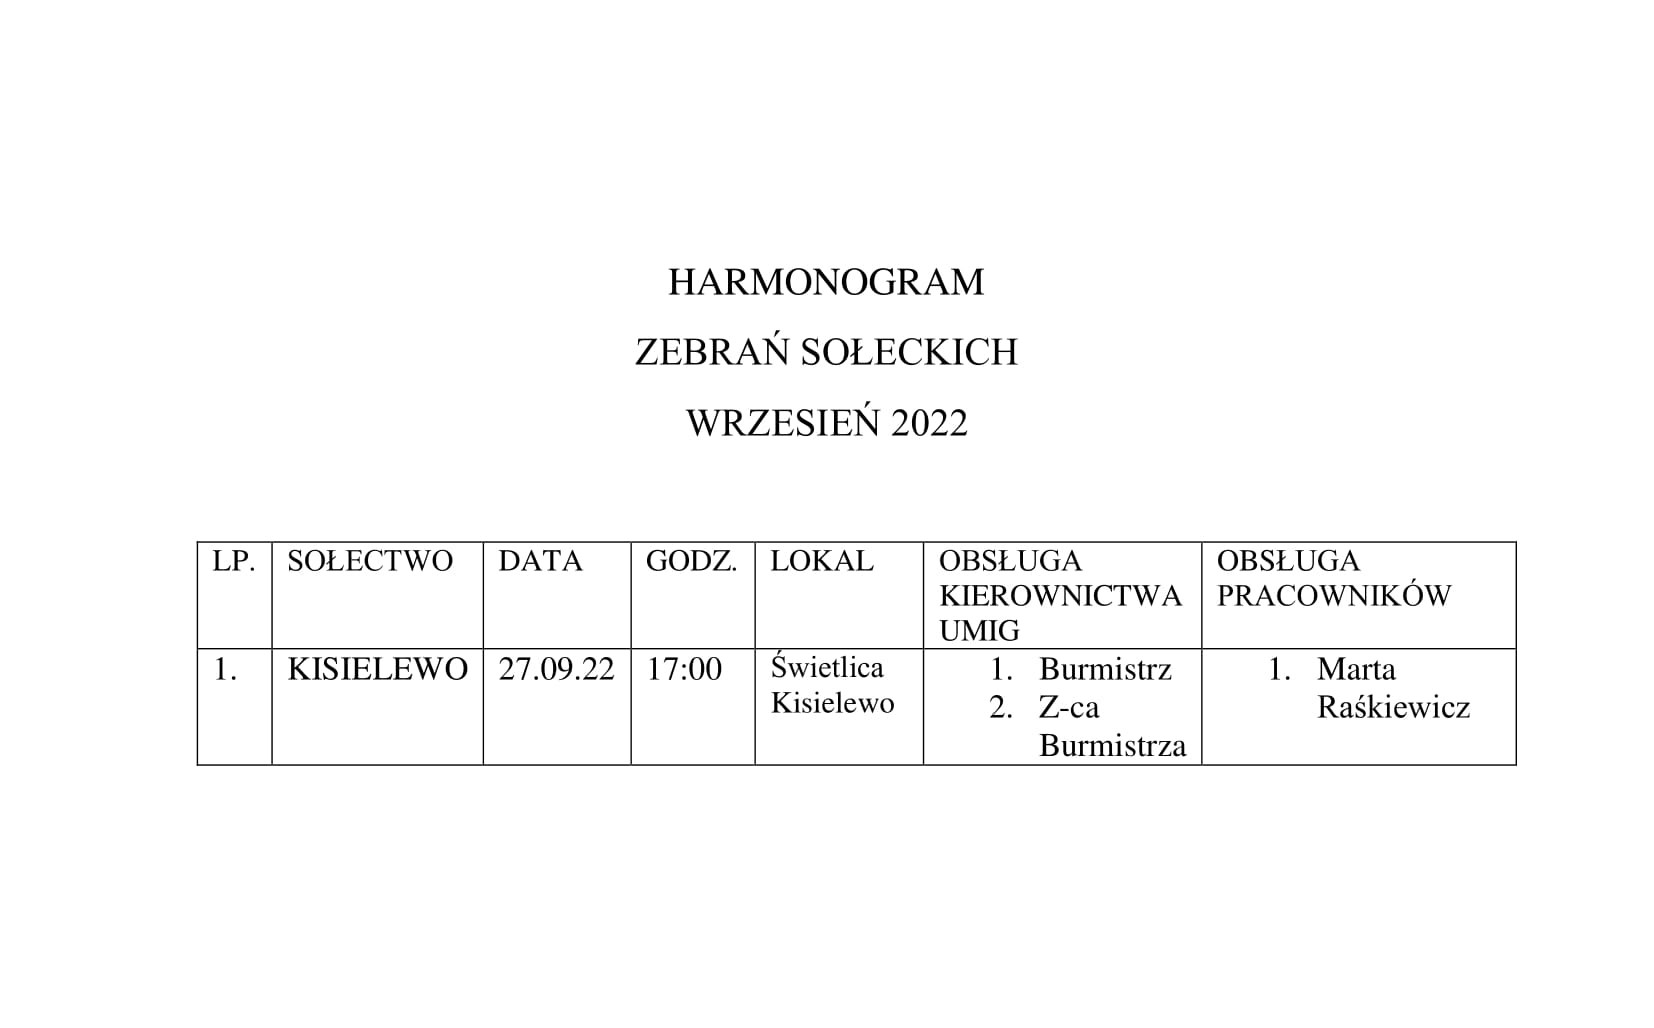 HARMONOGRAM WRZESIEŃ 2022 F 1